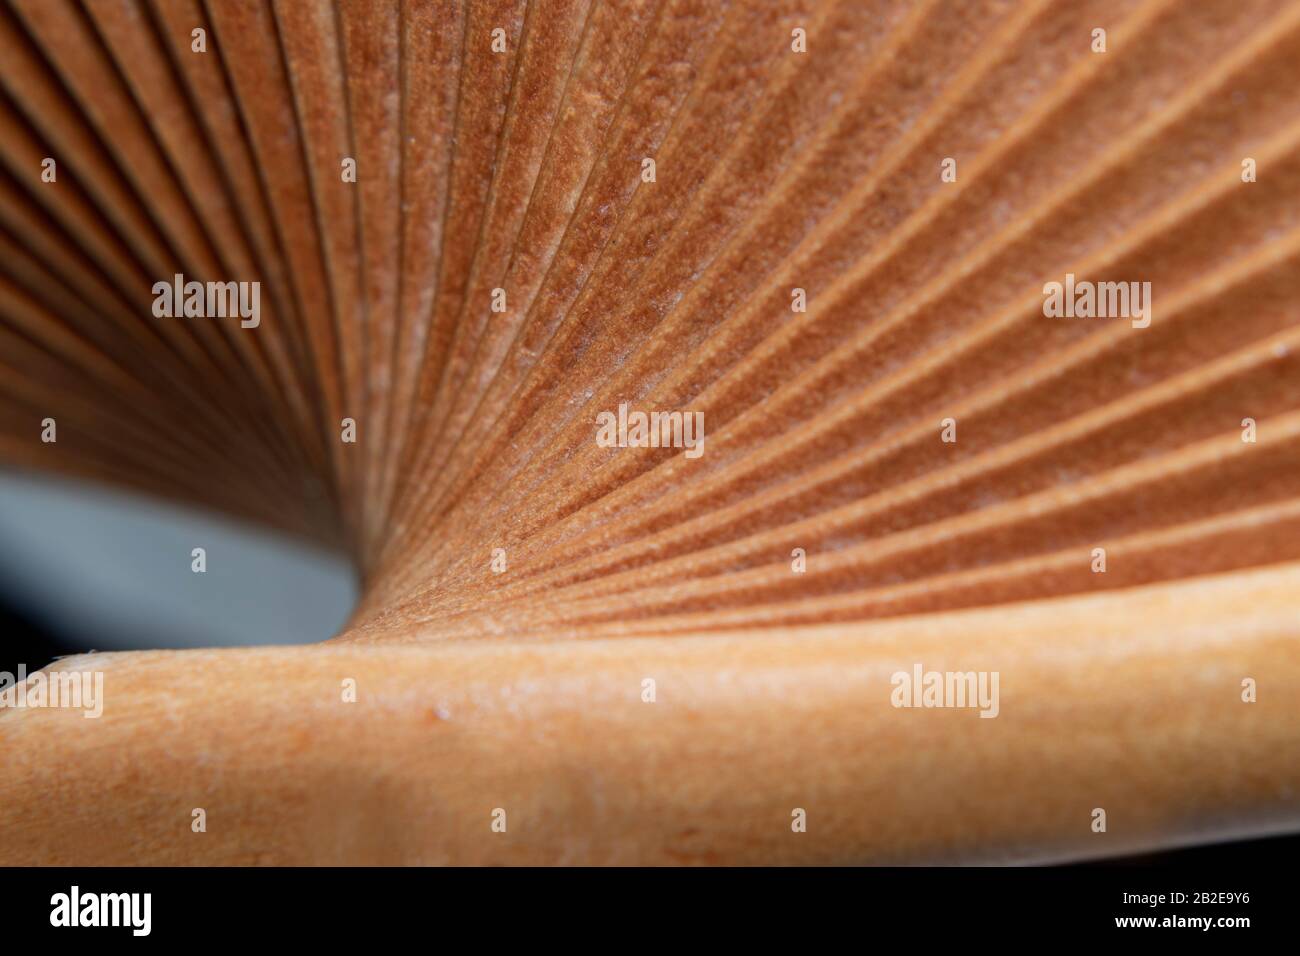 dettaglio macro di ventilatore in legno da diverse viste in colore cammello Foto Stock